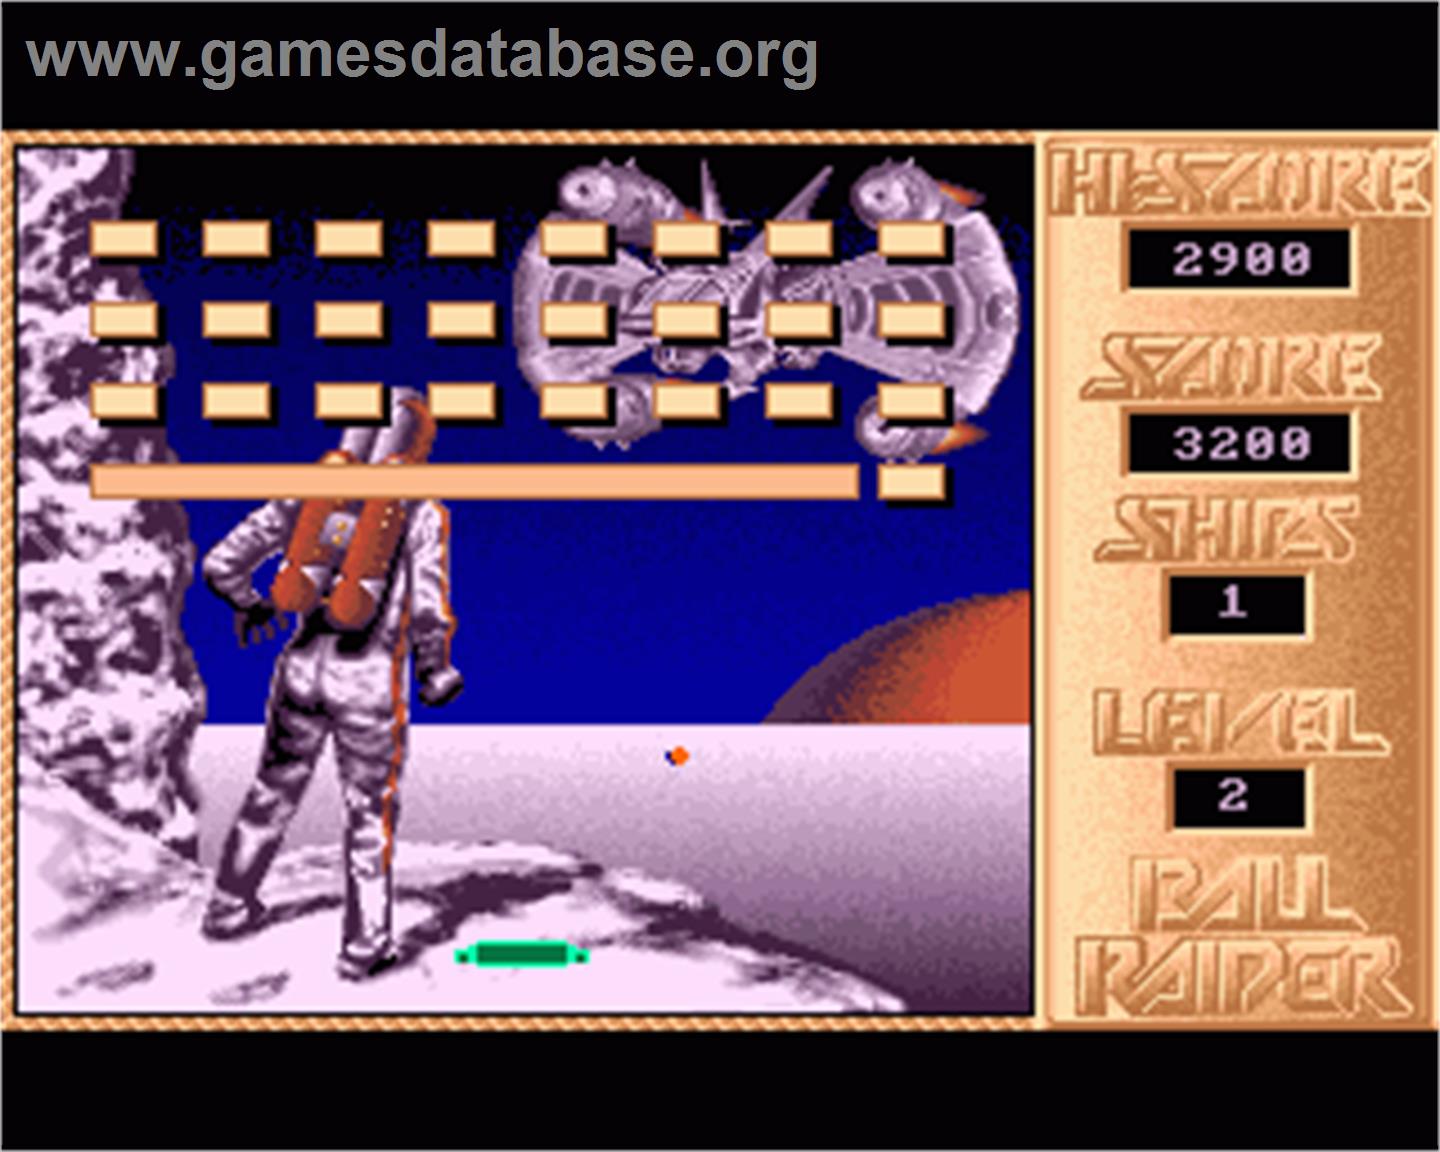 Ball Raider 2 - Commodore Amiga - Artwork - In Game